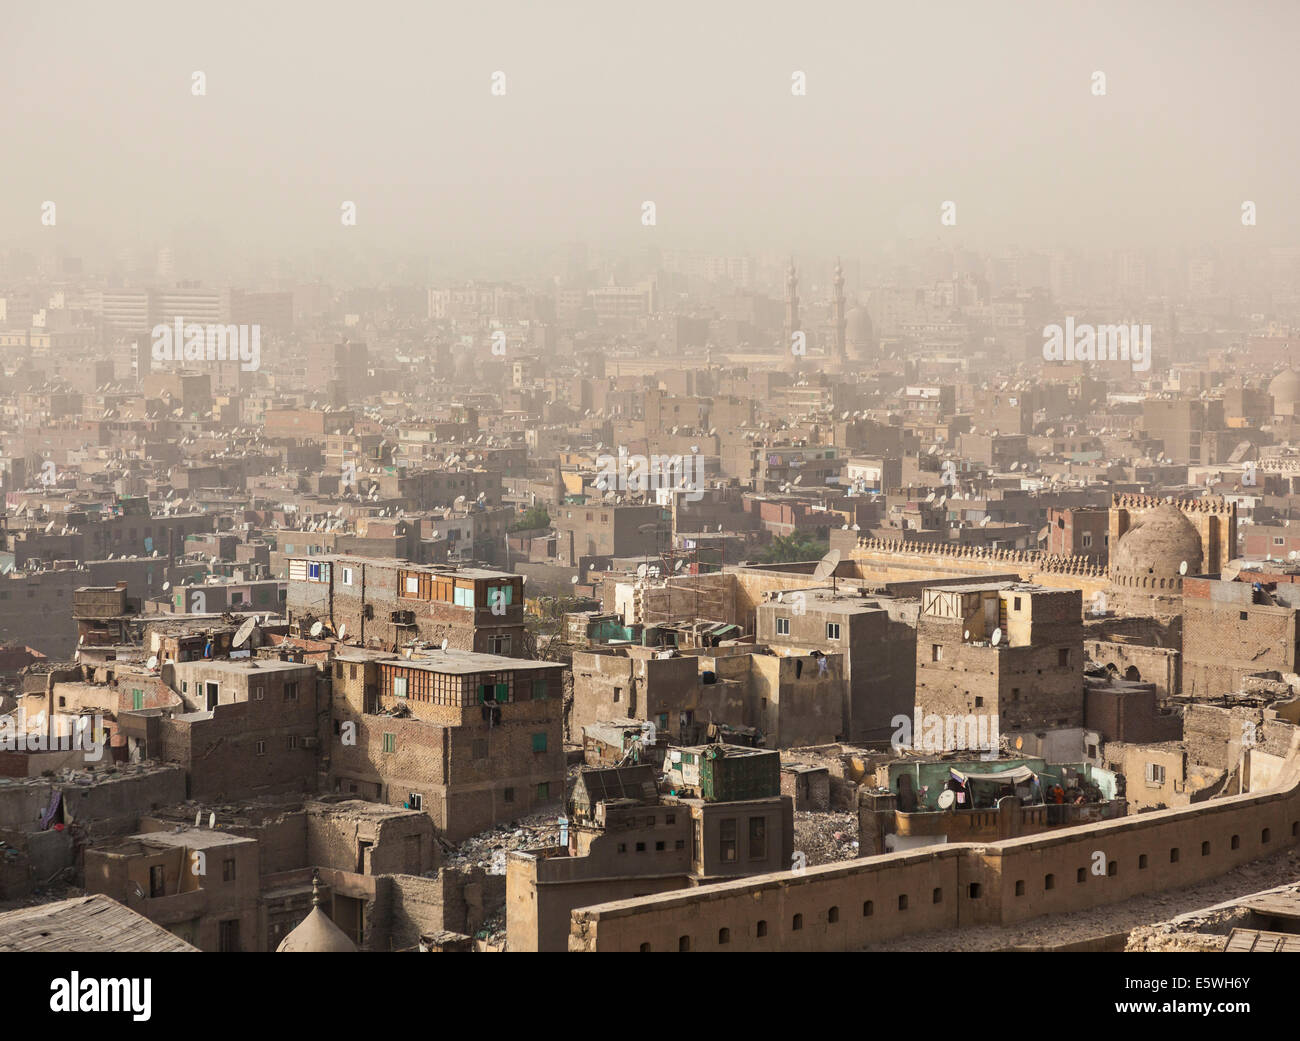 Il Cairo, Egitto - baraccopoli edifici nel centro cittadino del Cairo con forte inquinamento o smog Foto Stock